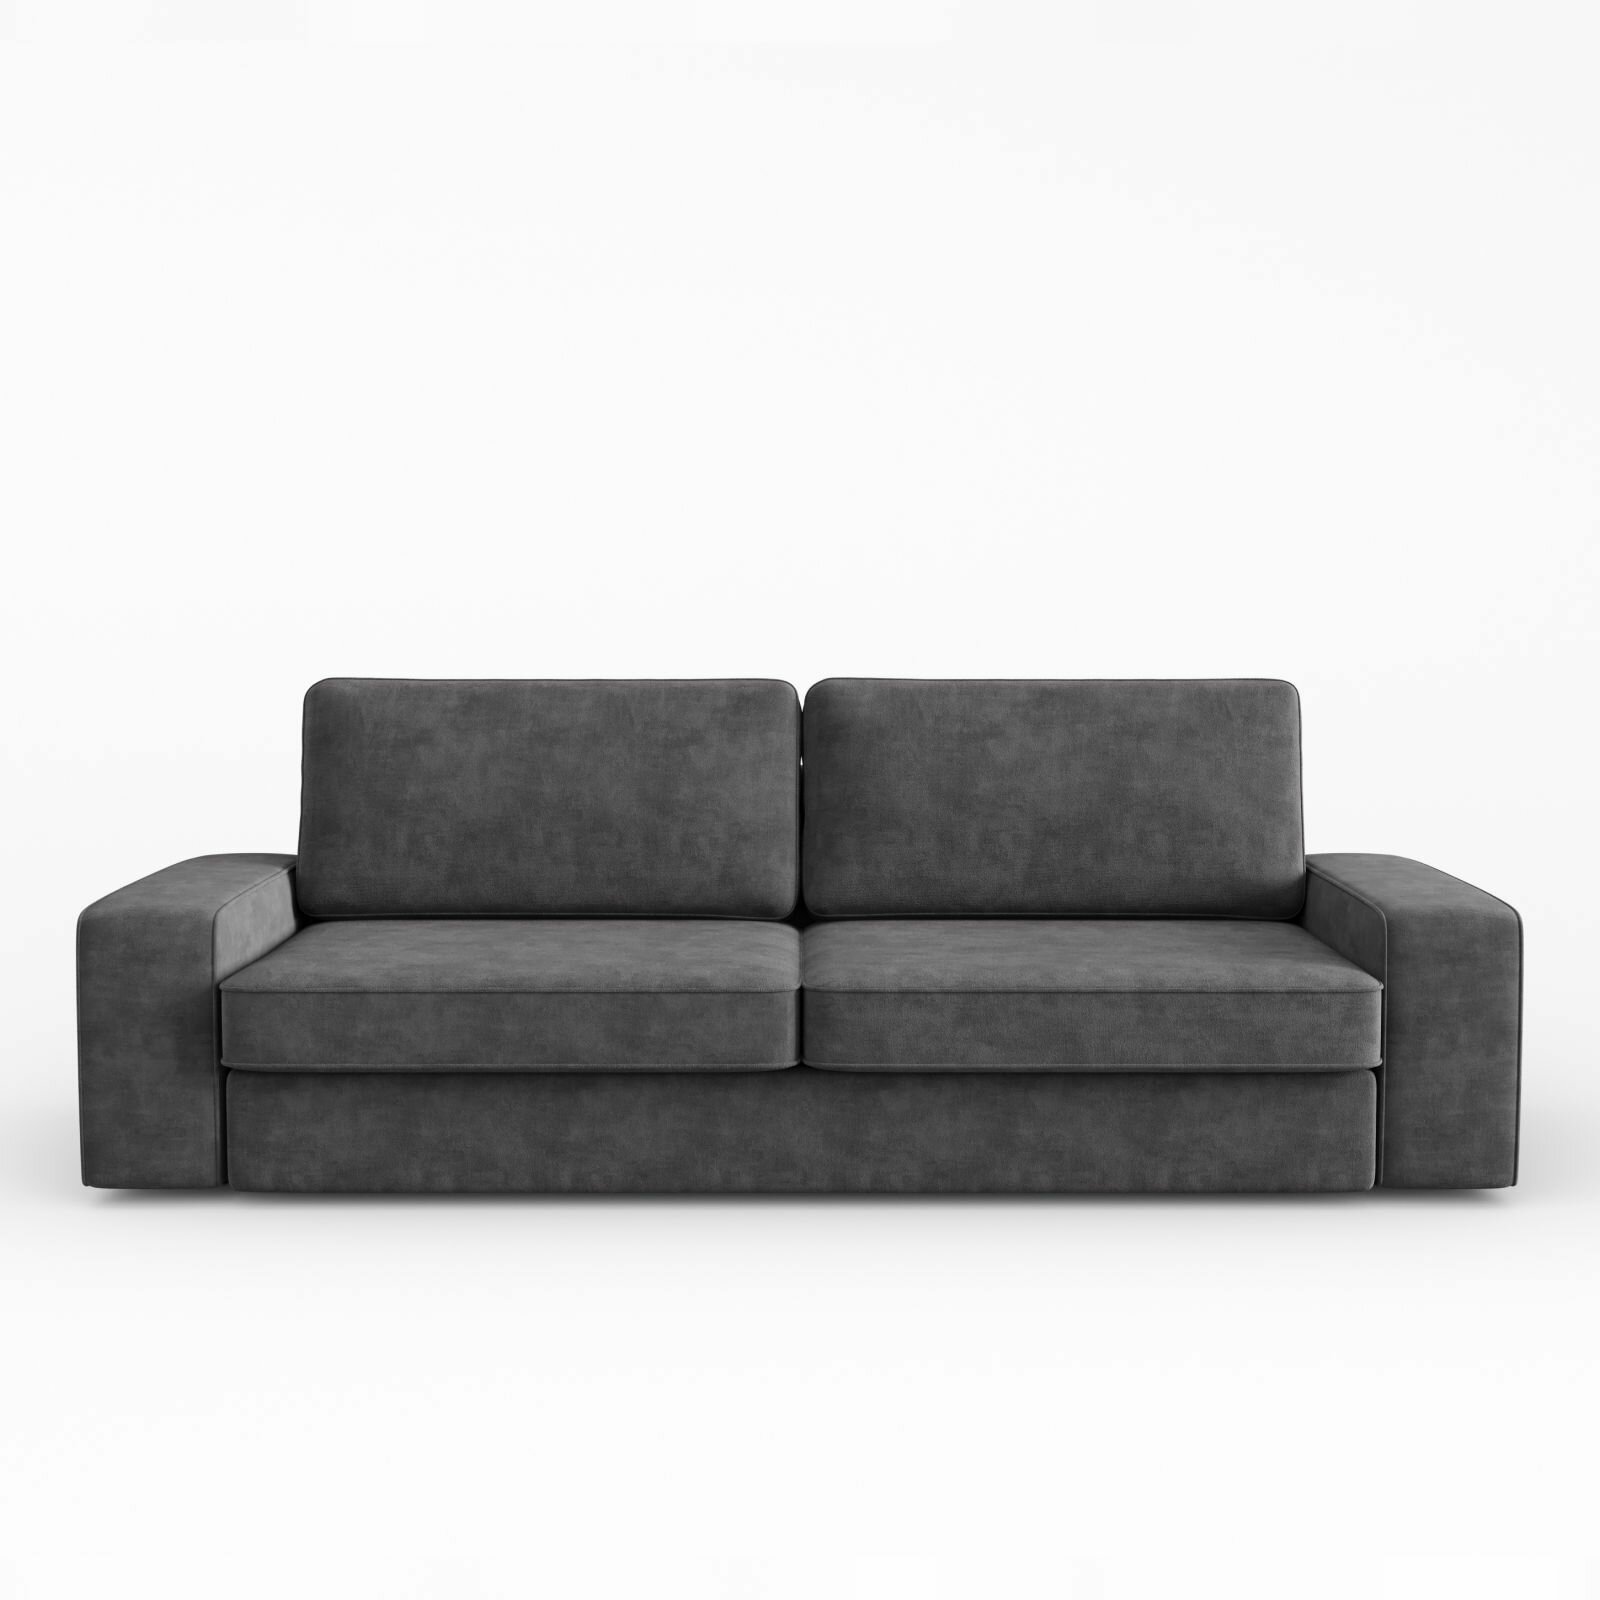 Прямой диван-кровать Manons Maison Lykke, раскладной механизм Выкатной, Велюр серый, 248х104х71 см. Товар уцененный